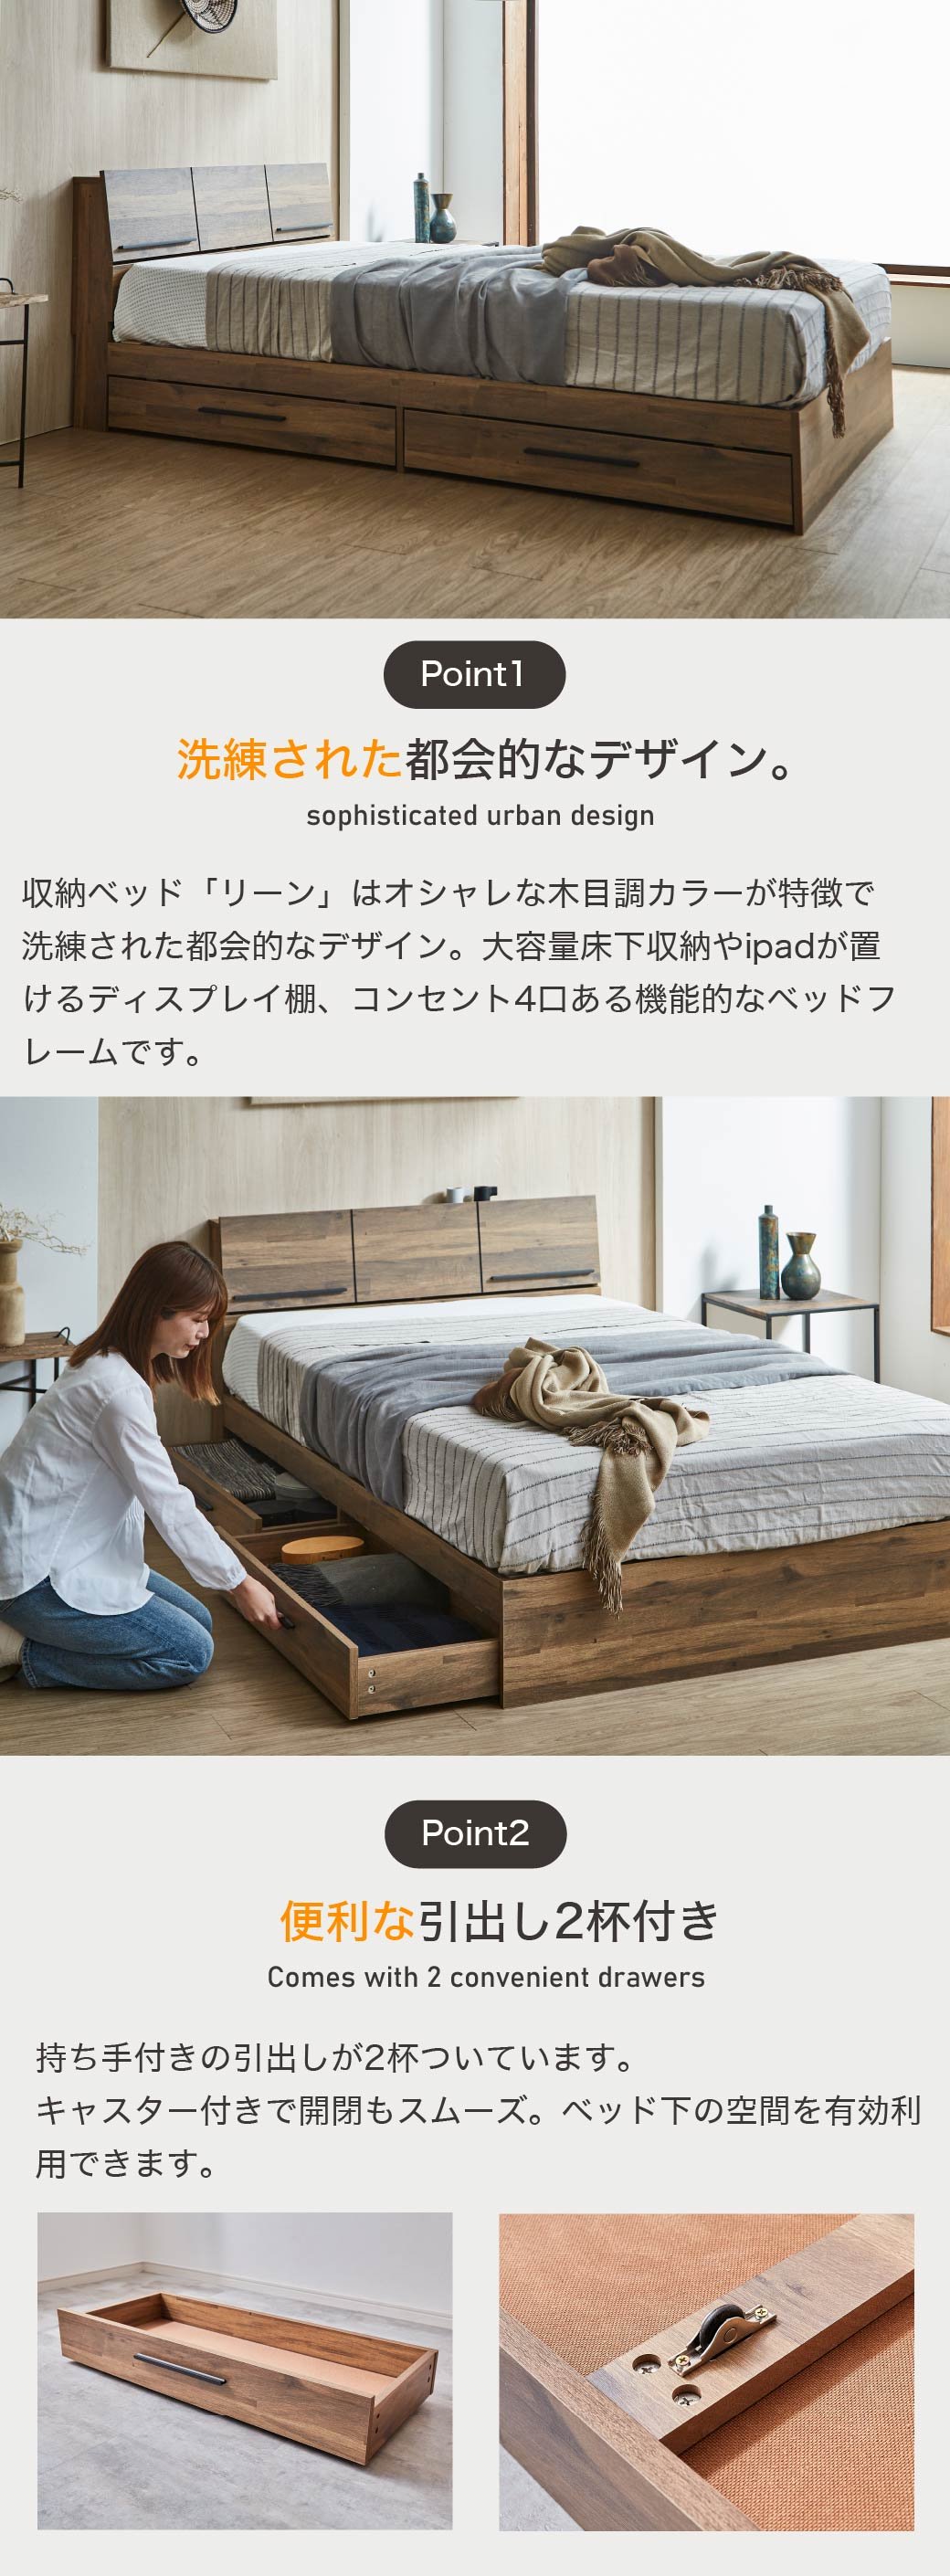 収納ベッド「リーン」はオシャレな木目調カラーが特徴で洗練された都会的なデザイン。大容量床下収納やipadが置けるディスプレイ棚、コンセント4口ある機能的なベッドフレームです。持ち手付きの引出しが2杯ついています。キャスター付きで開閉もスムーズ。ベッド下の空間を有効利用できます。